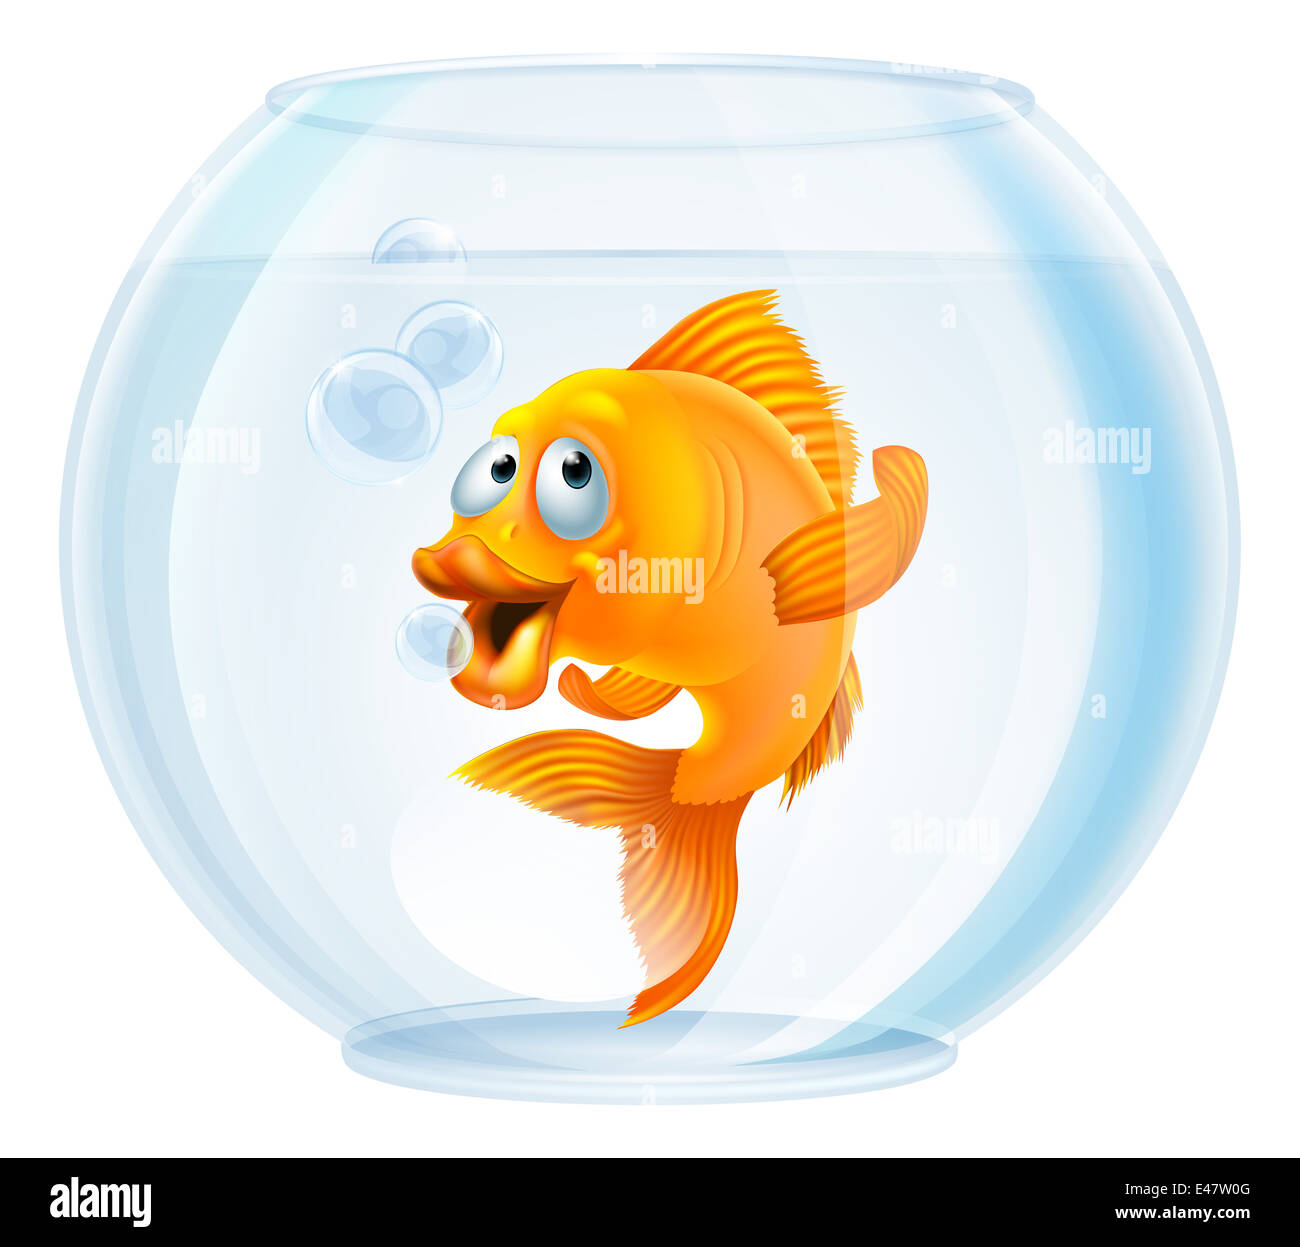 Une illustration d'un cute cartoon poissons rouges dans un bocal à poissons d'or Banque D'Images